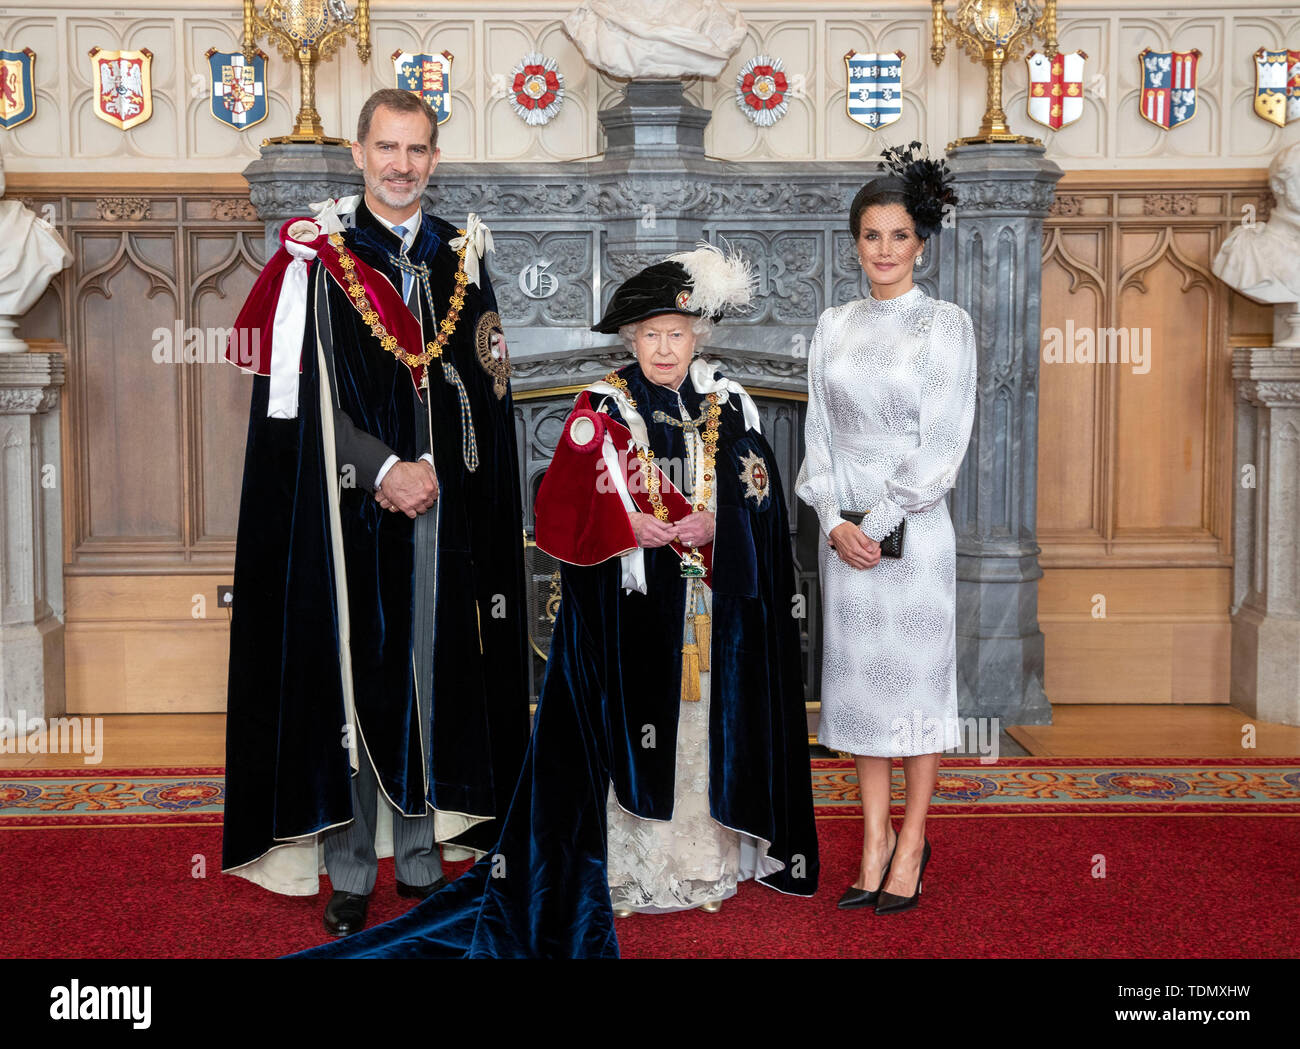 Königin Elizabeth II (Mitte) mit König Felipe VI. von Spanien und seine Frau, Königin Letizia in St. George's Hall, im Schloss Windsor, nach dem König als überzähligen Ritter der Strumpfband, vor der Bestellung des Strumpfband Service im St George's Chapel investiert wurde. Stockfoto